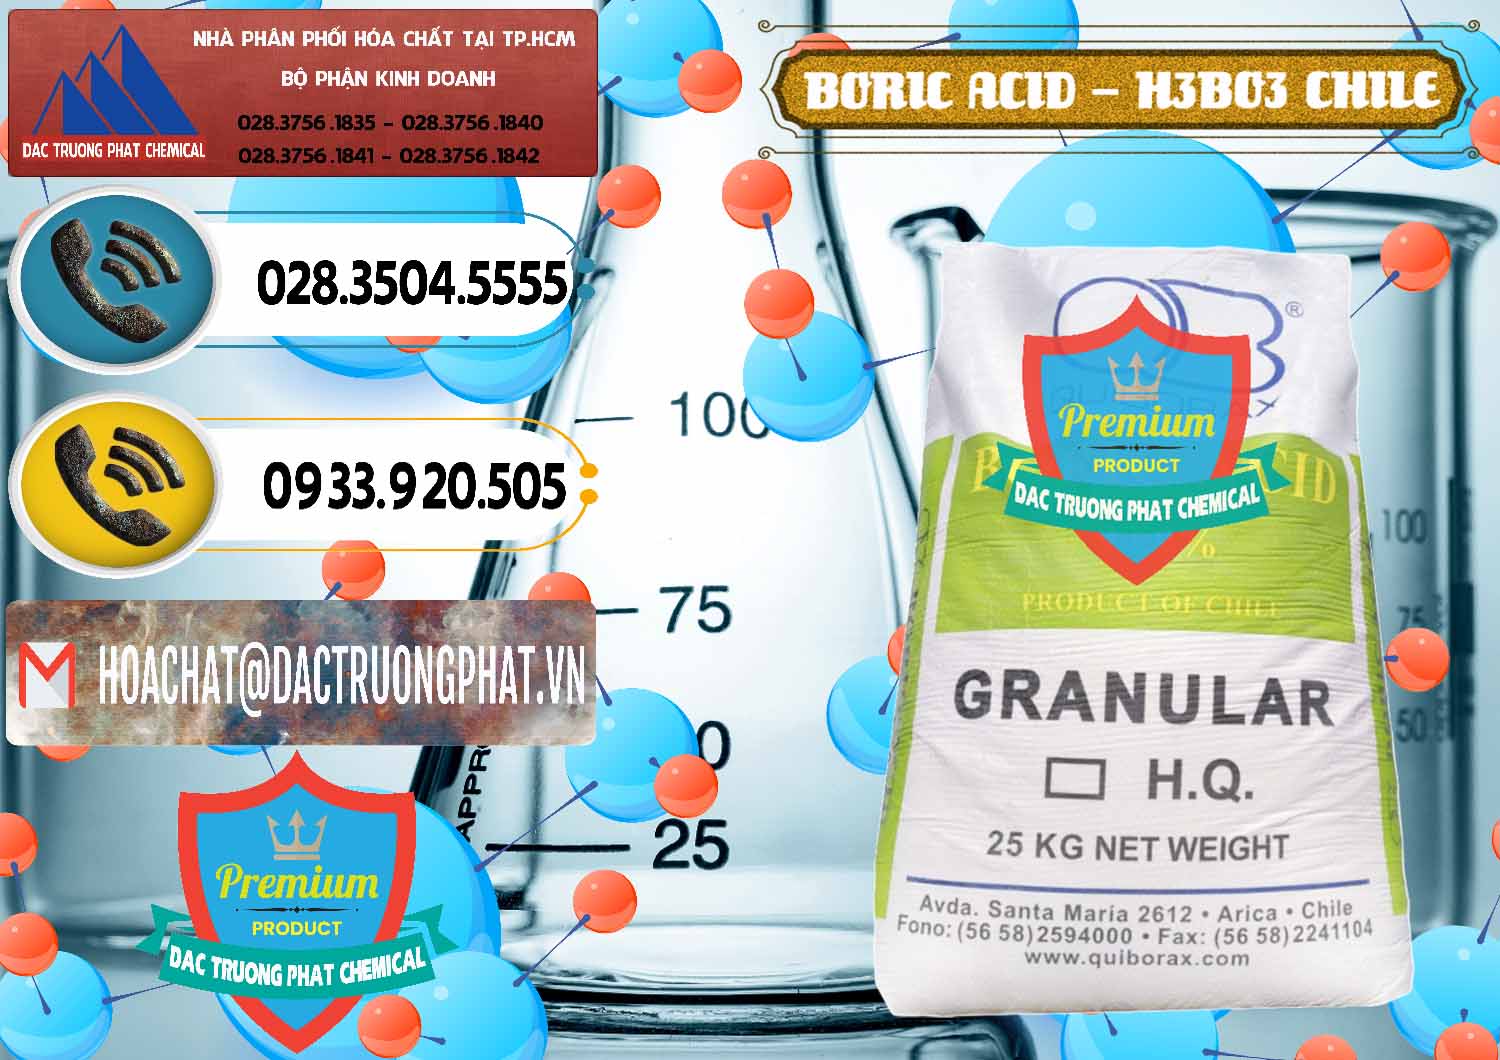 Nơi cung cấp _ bán Acid Boric – Axit Boric H3BO3 99% Quiborax Chile - 0281 - Nơi cung cấp - bán hóa chất tại TP.HCM - hoachatdetnhuom.vn